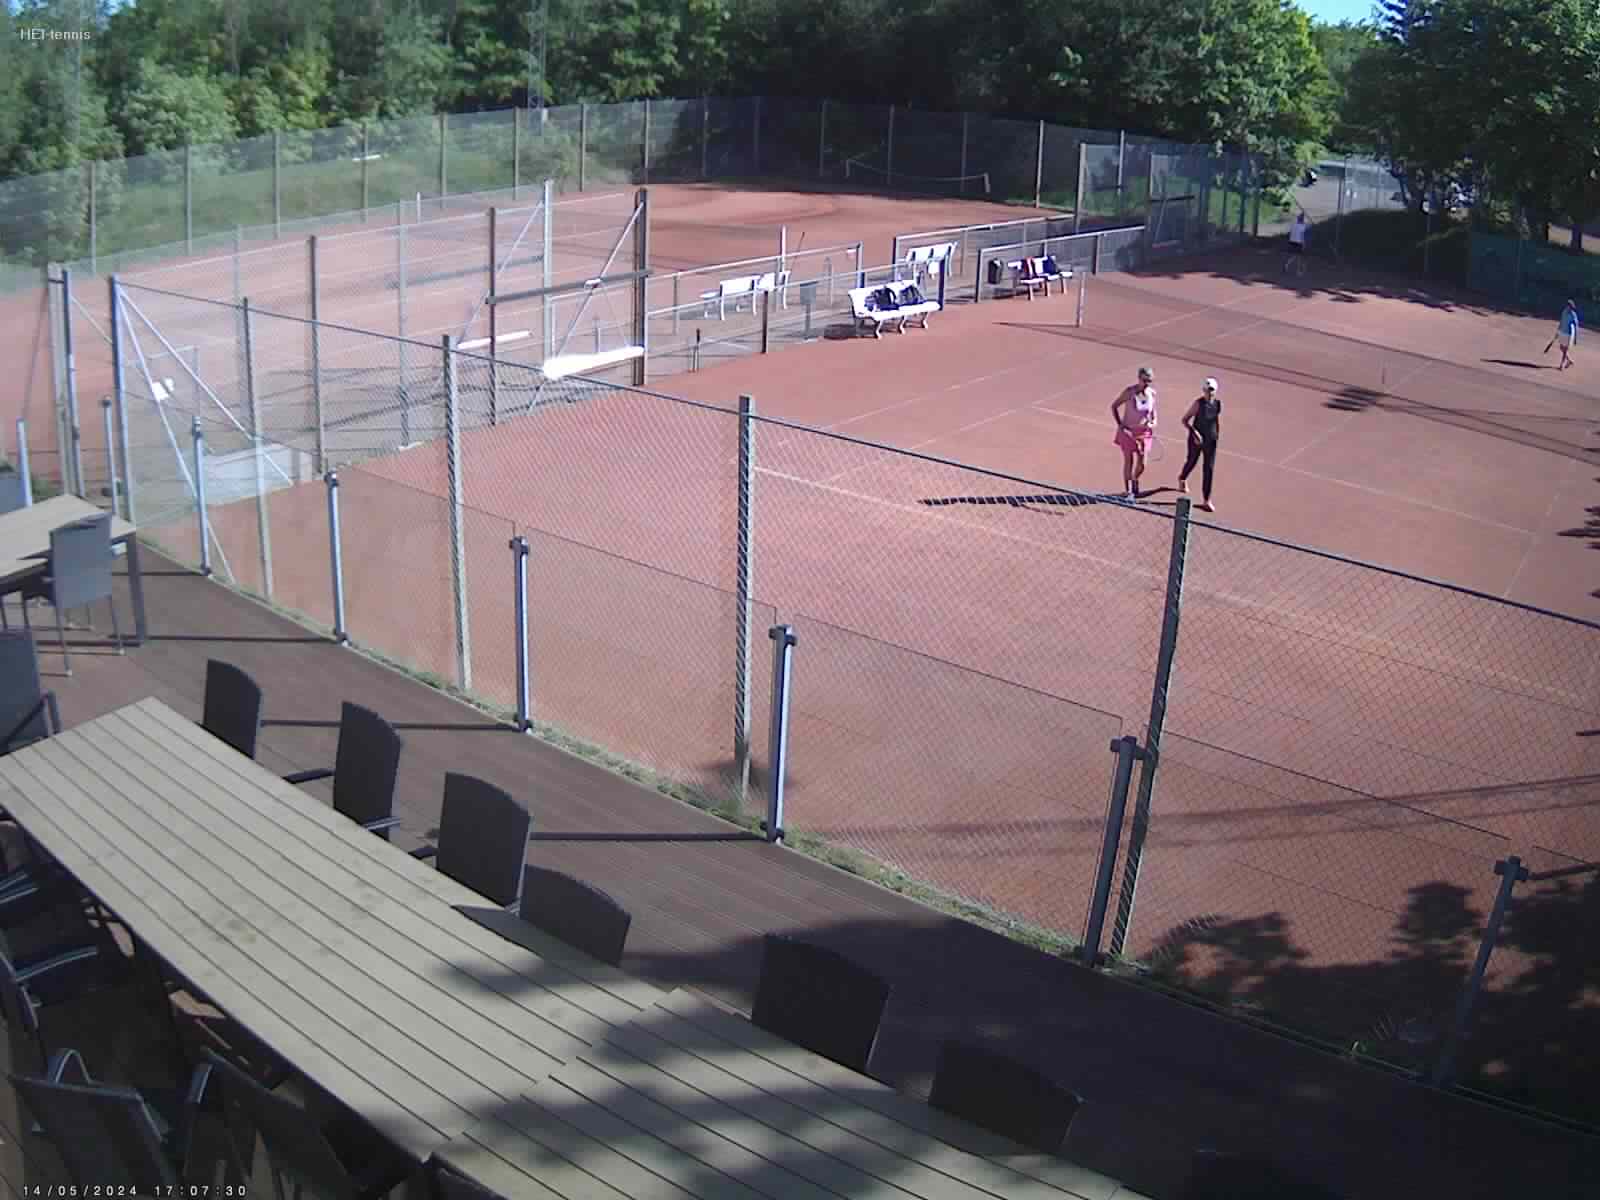 Webcam outdoor tennis Egaa Denmark Egaa Denmark - Webcams Abroad live images